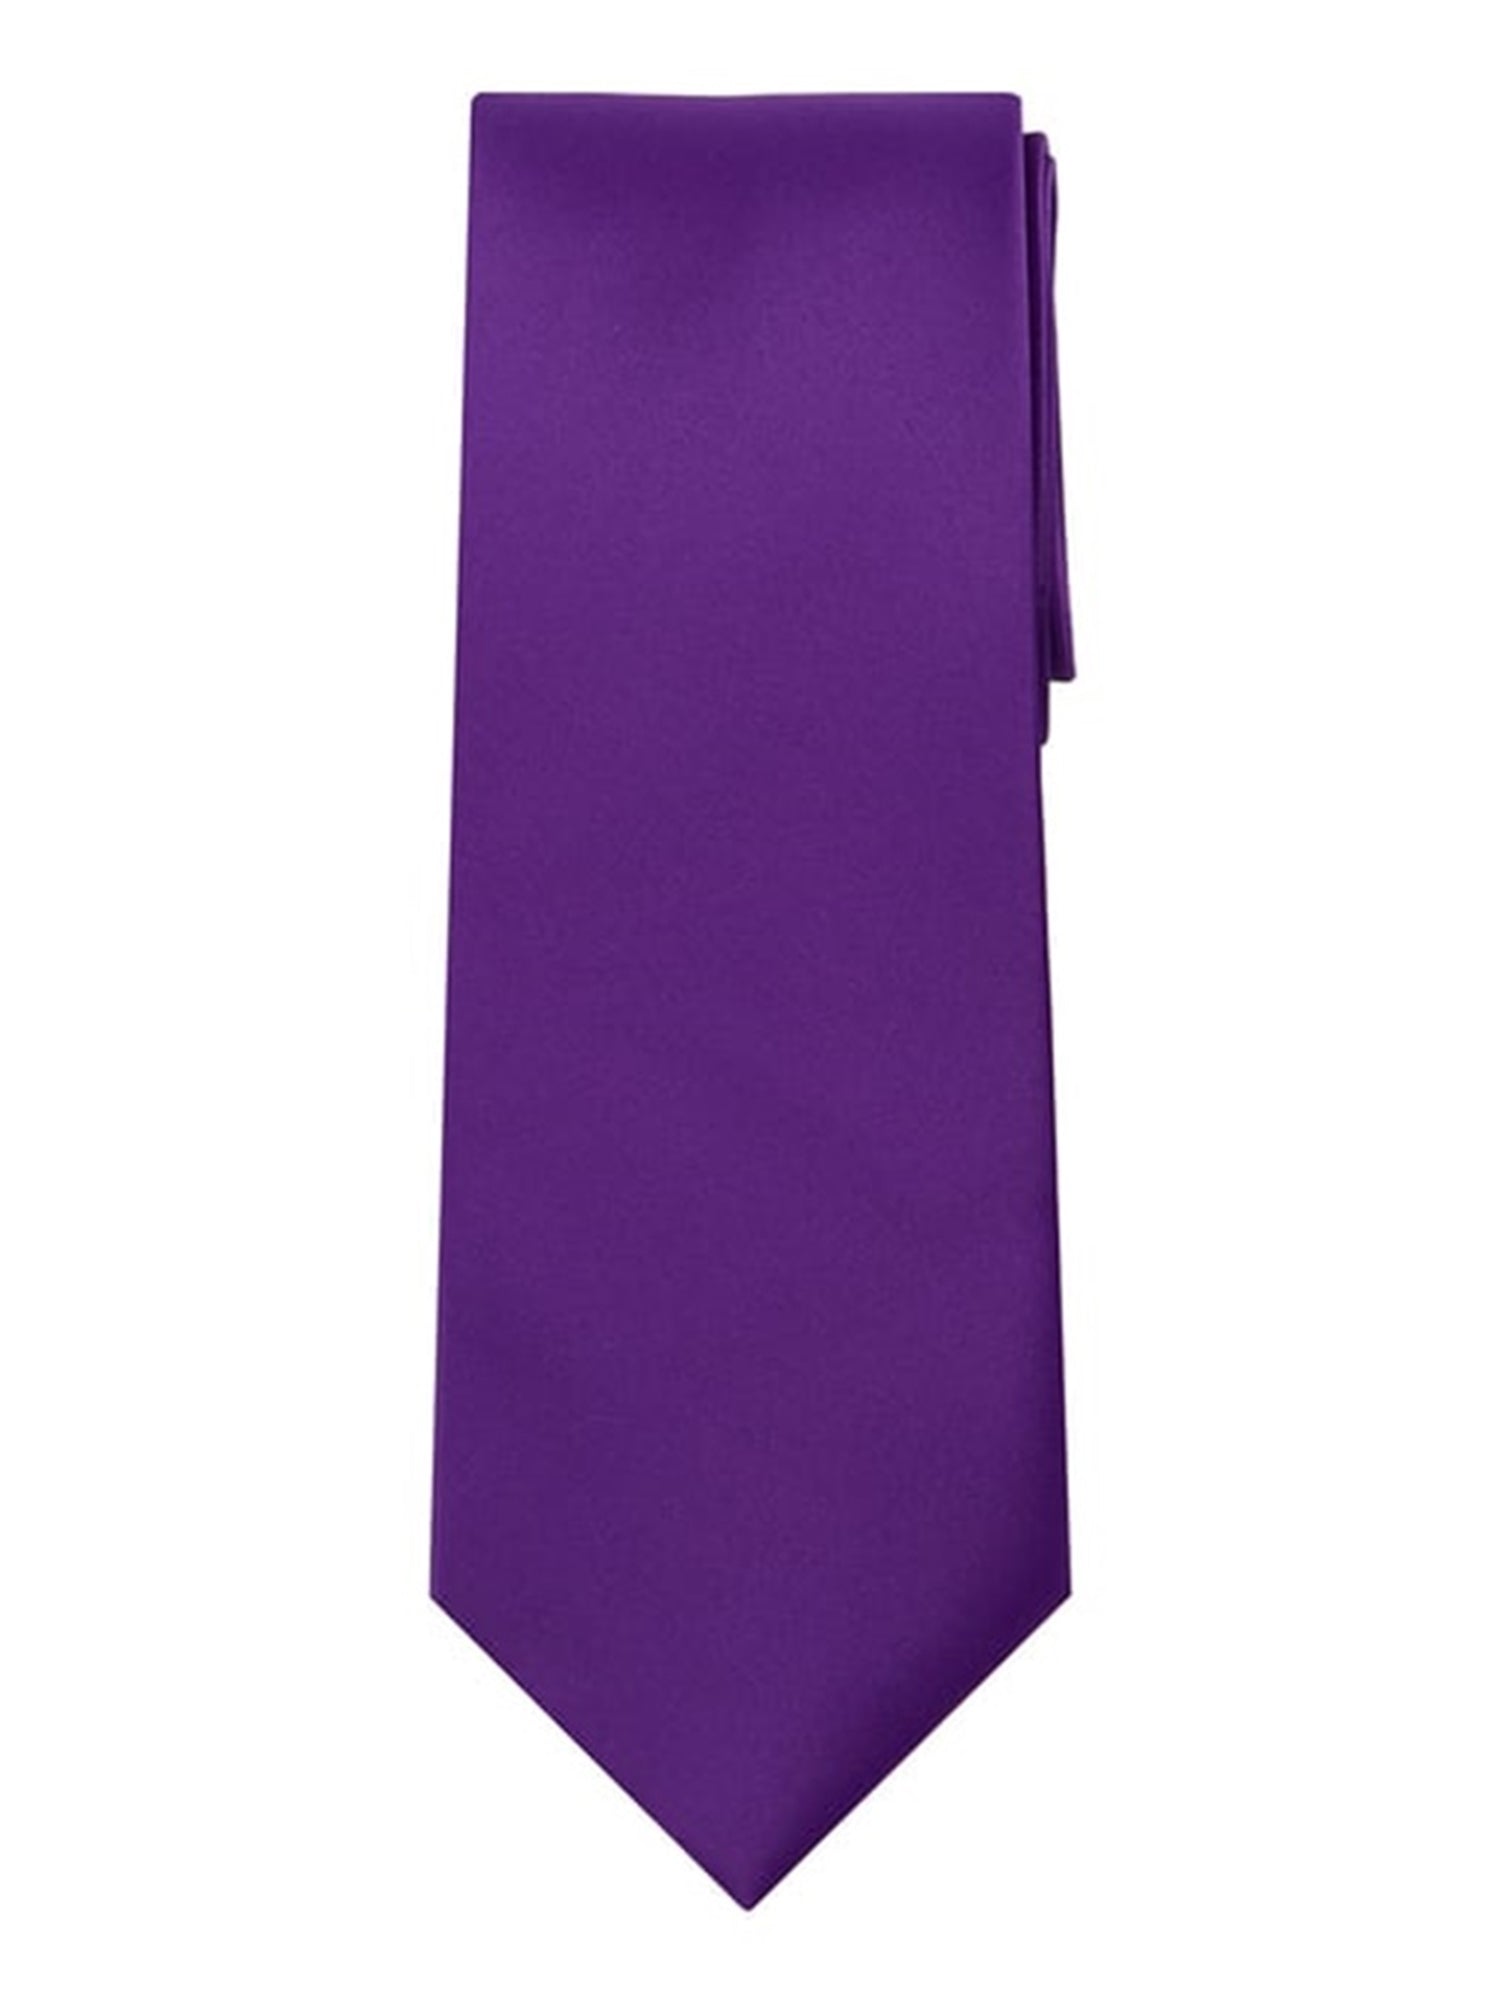 Marquis Men's Solid Neck Tie & Hanky Set Neck Ties Marquis Purple One Size 